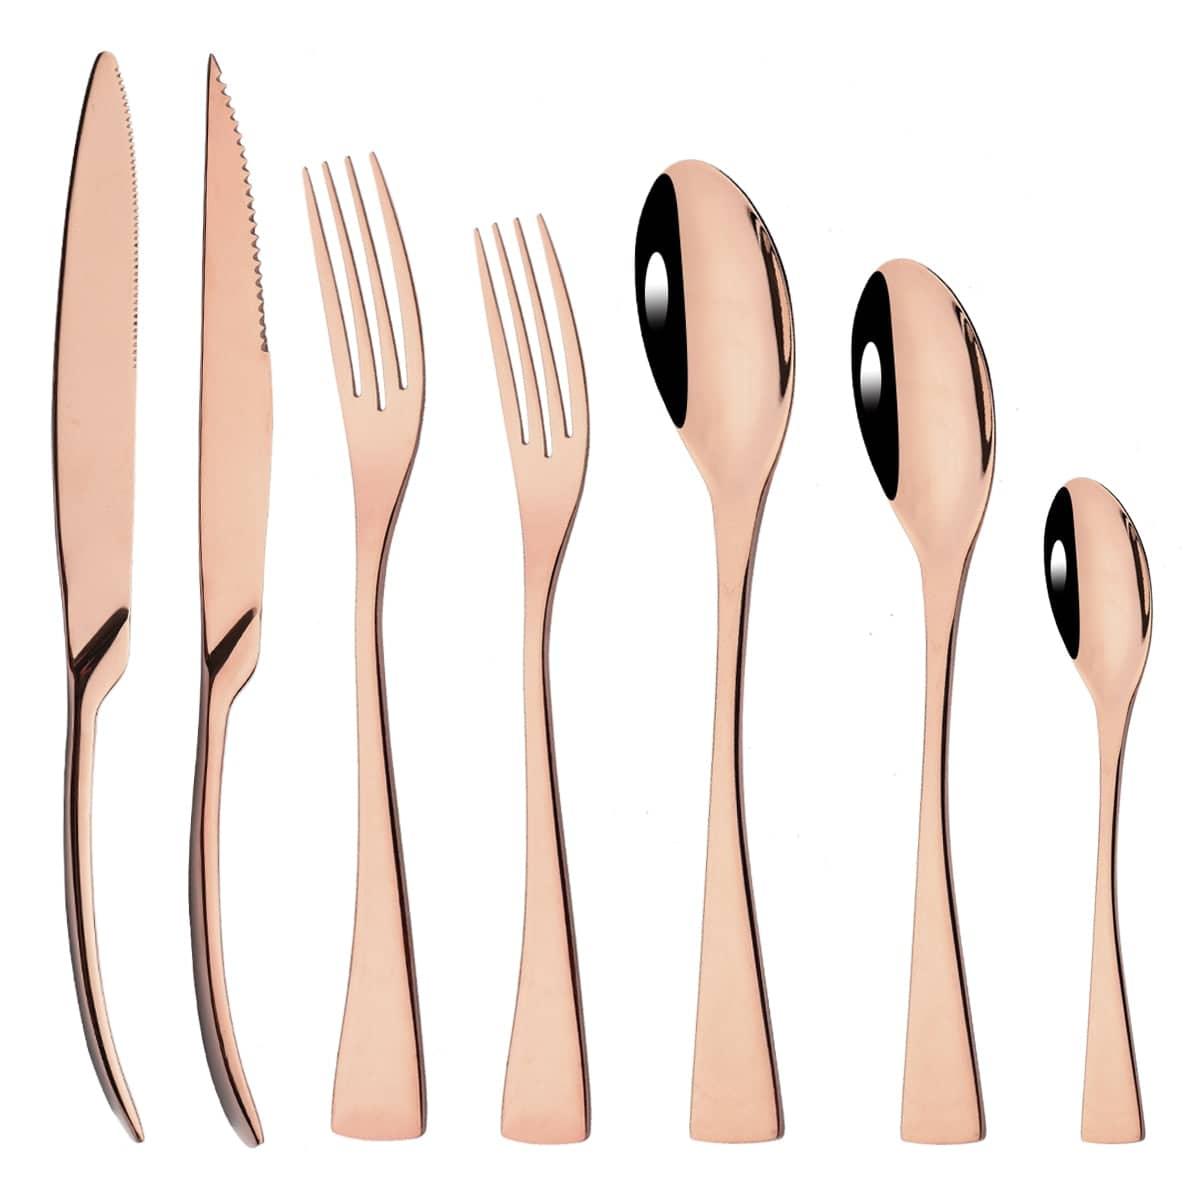 Elegant Curve Rose Gold Cutlery Set - Knife, Fork and Spoon Flatware